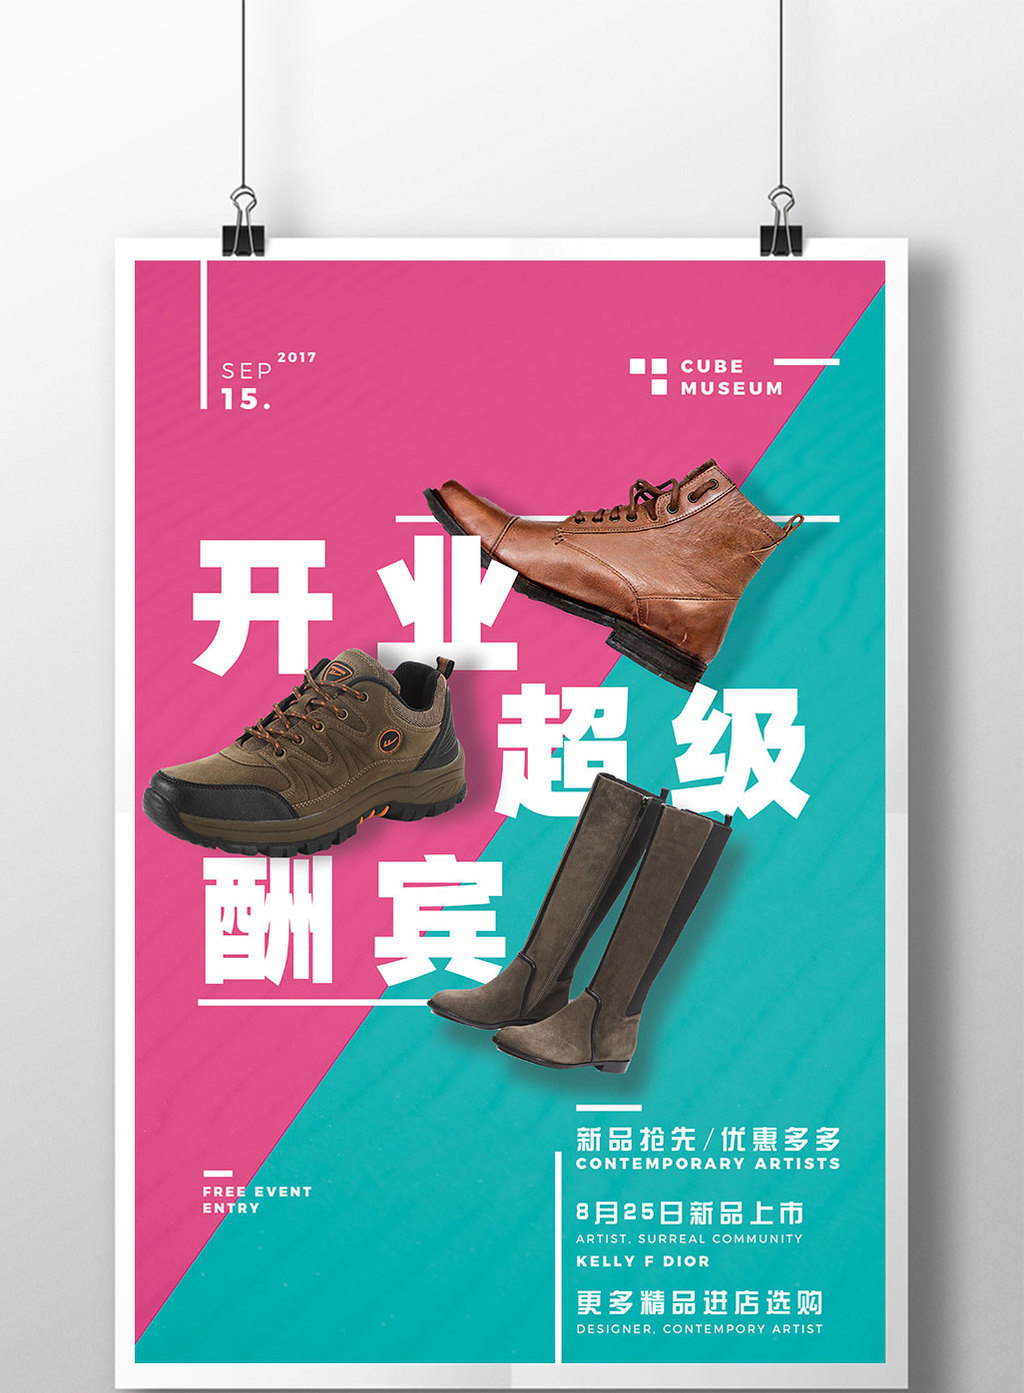 鞋子店铺开业超级大酬宾促销宣传海报